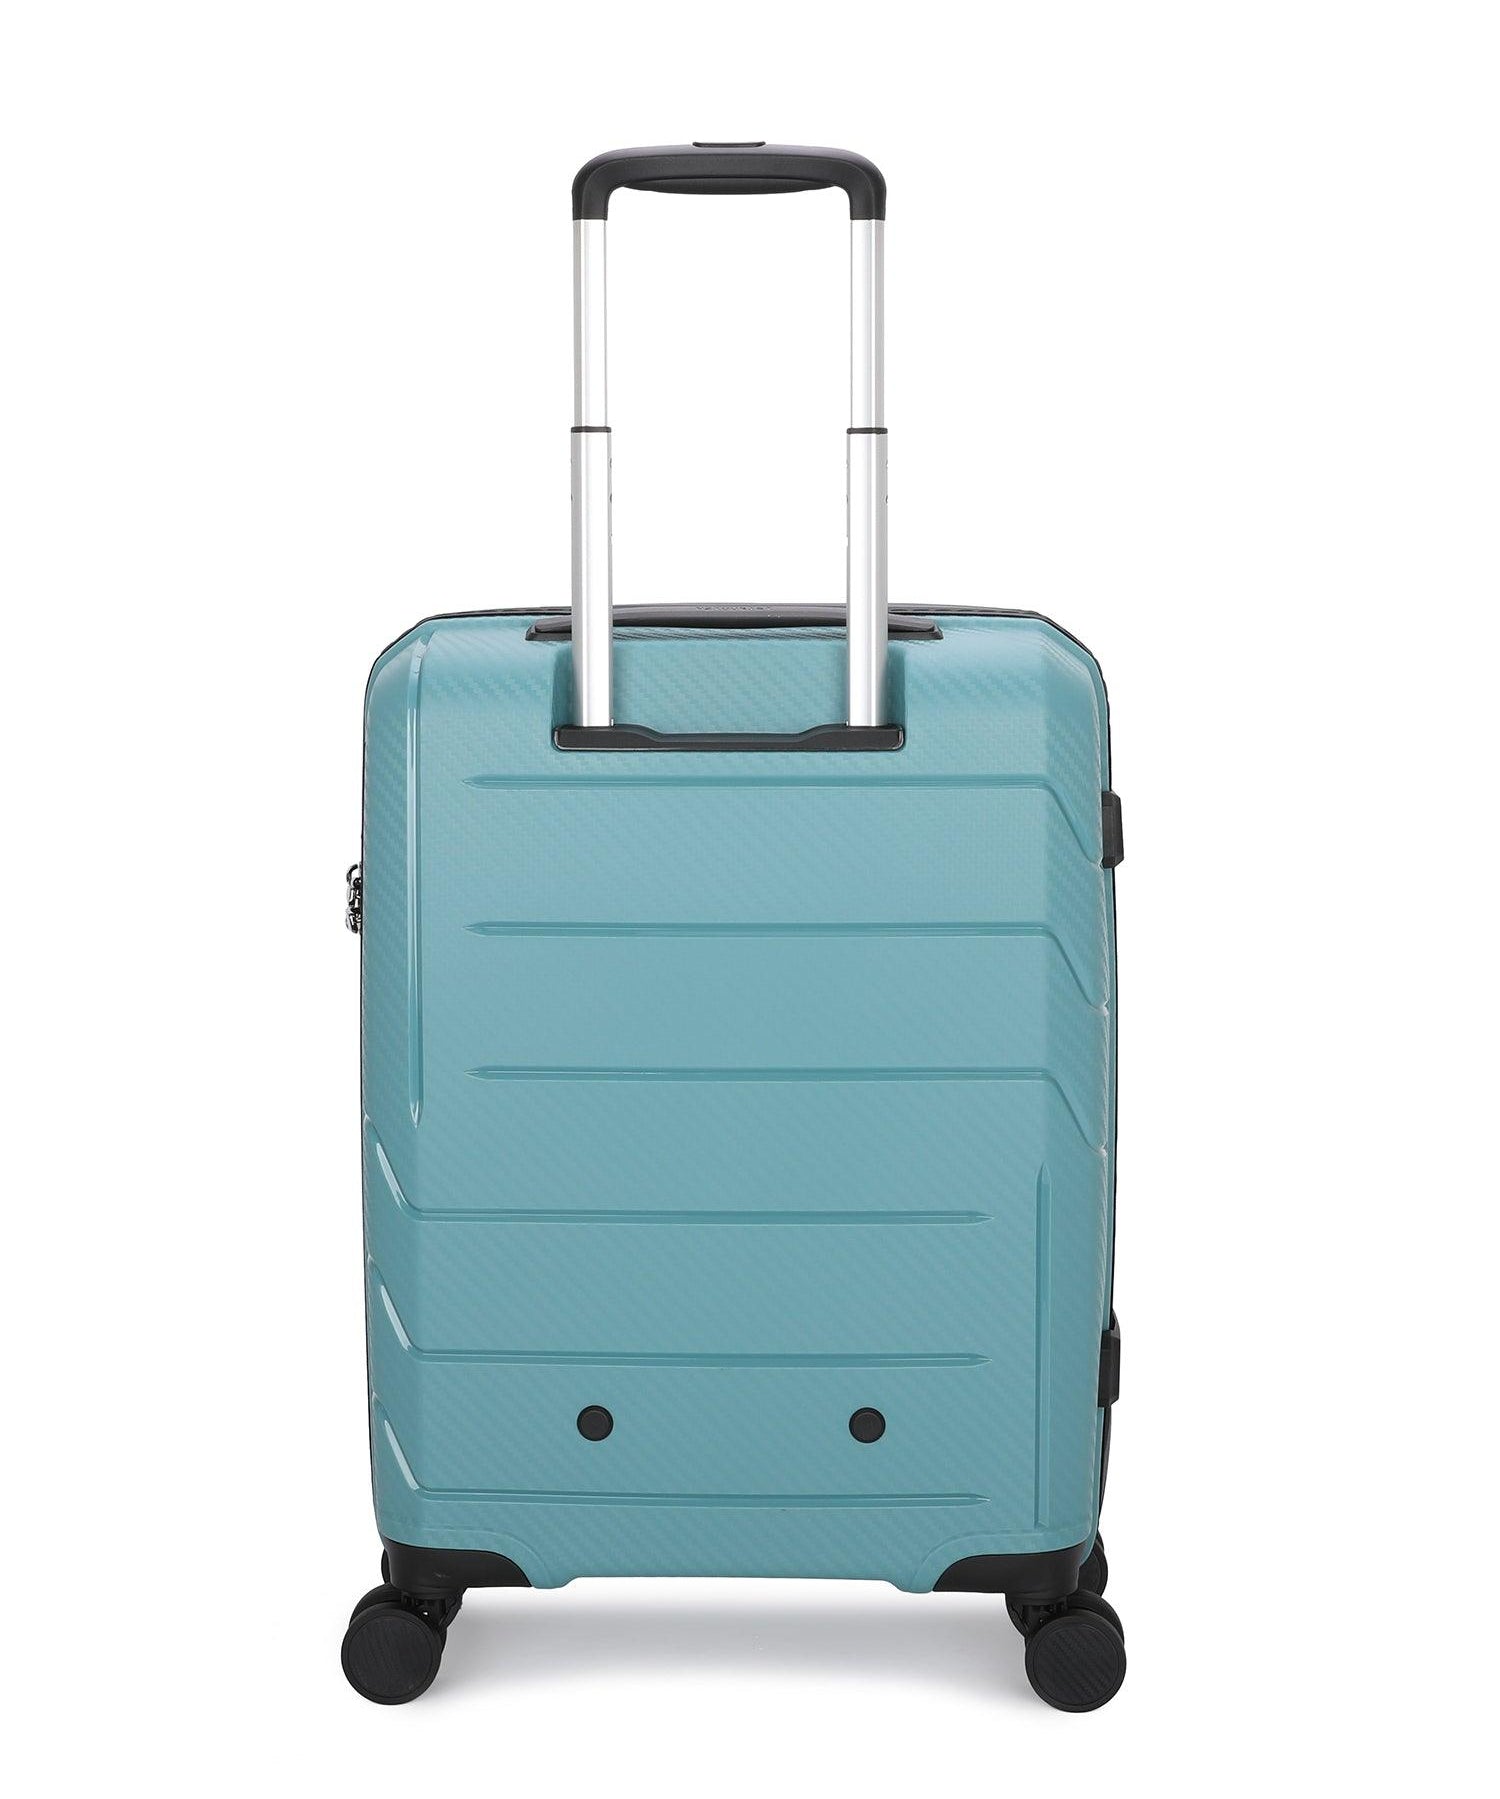 NZTourist Ultra-Light Traveller 56cm Suitcase - Orange - San Michelle Bags suitcase nz